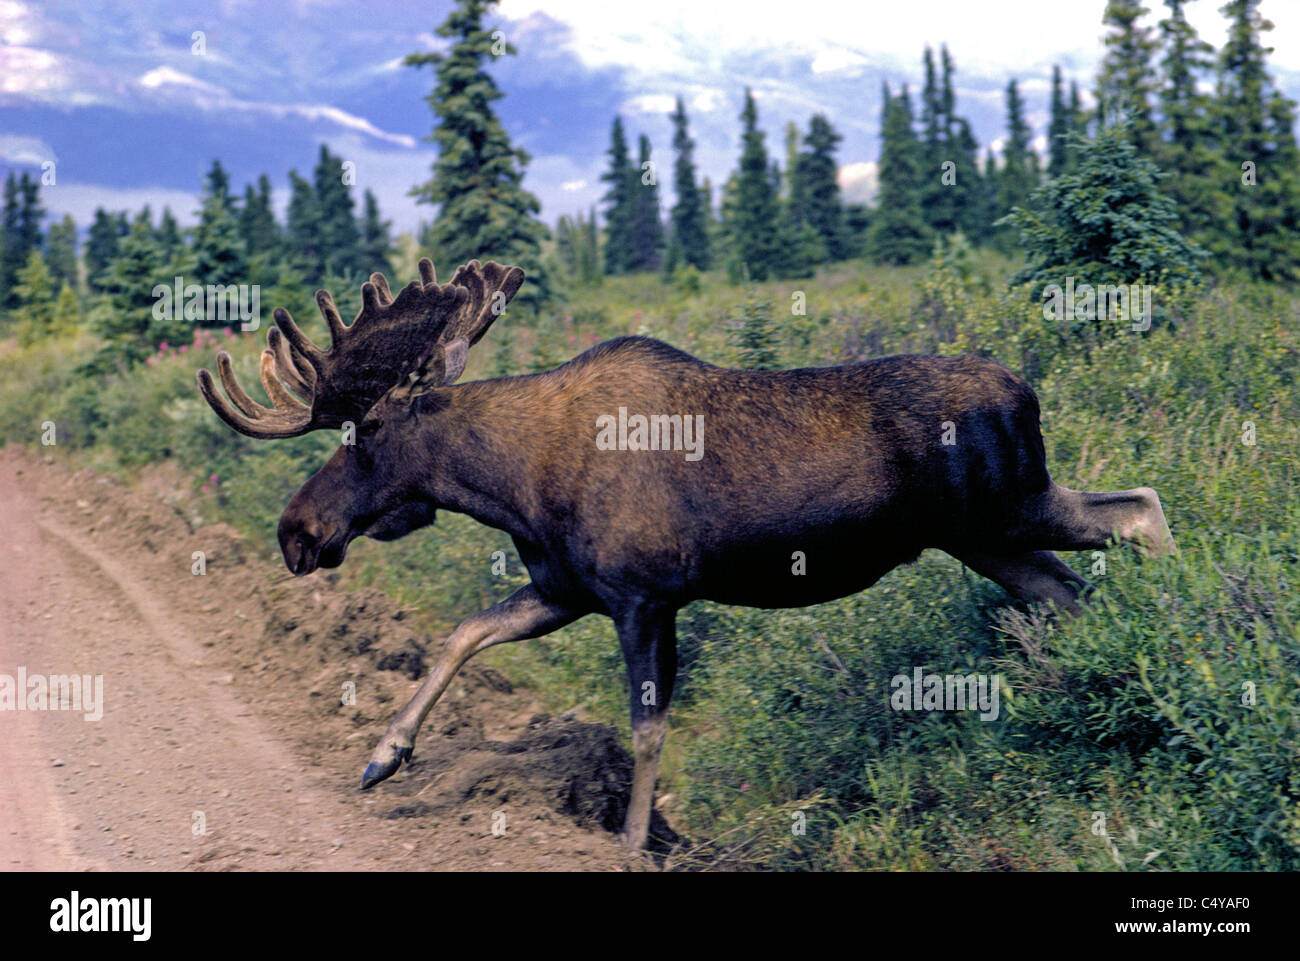 Un toro alces con grandes cuernos de repente guiones desde el desierto y se convierte en un peligro para los conductores sorprendidos en esta carretera sin pavimentar en Alaska, EE.UU. Foto de stock